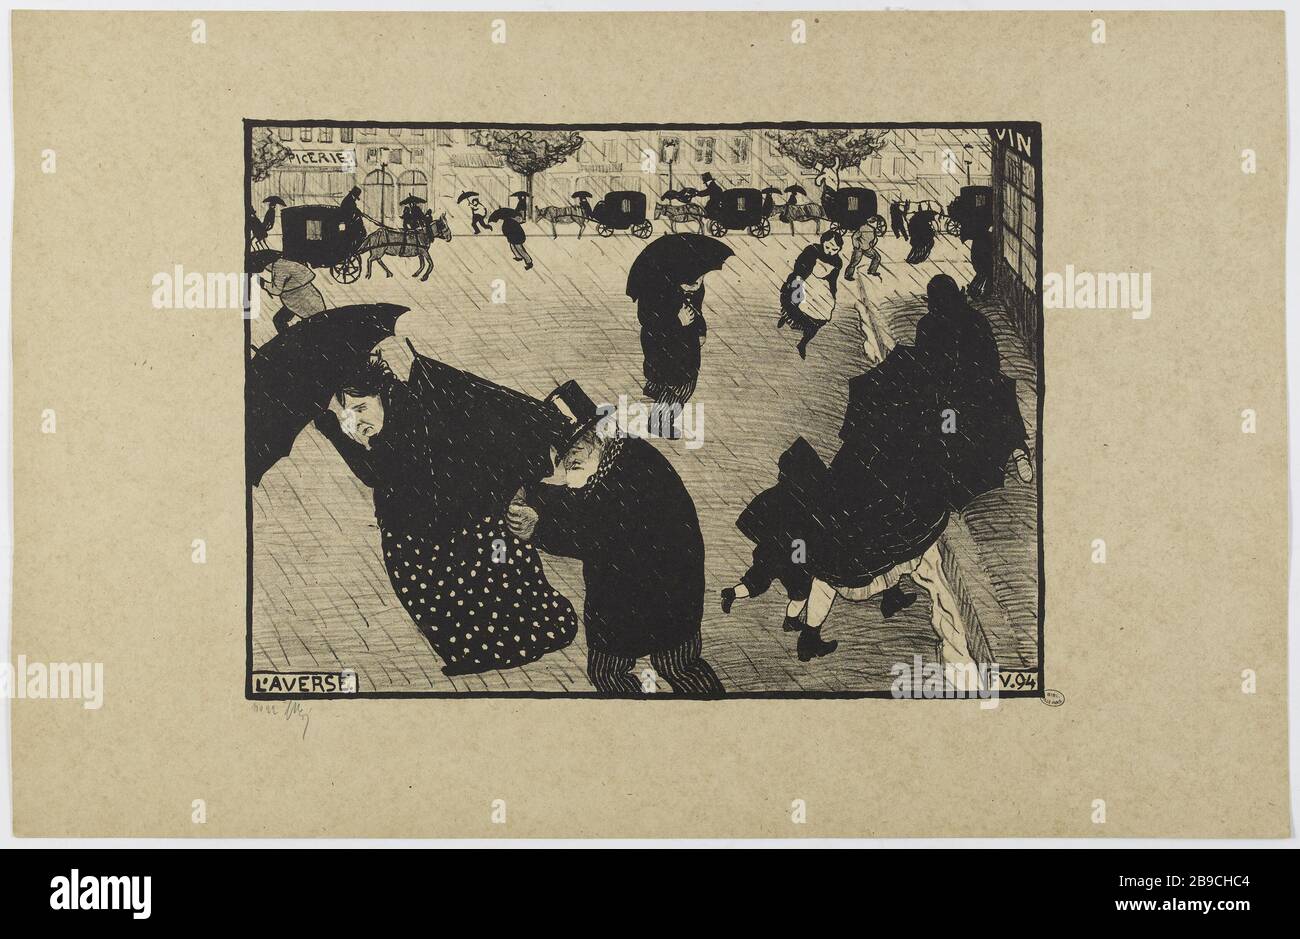 Die Herabschüttung. Félix Edouard Vallotton (1865-1925). "L'Averse". Tiefdruck. 1894. Paris, musée Carnavalet. Stockfoto